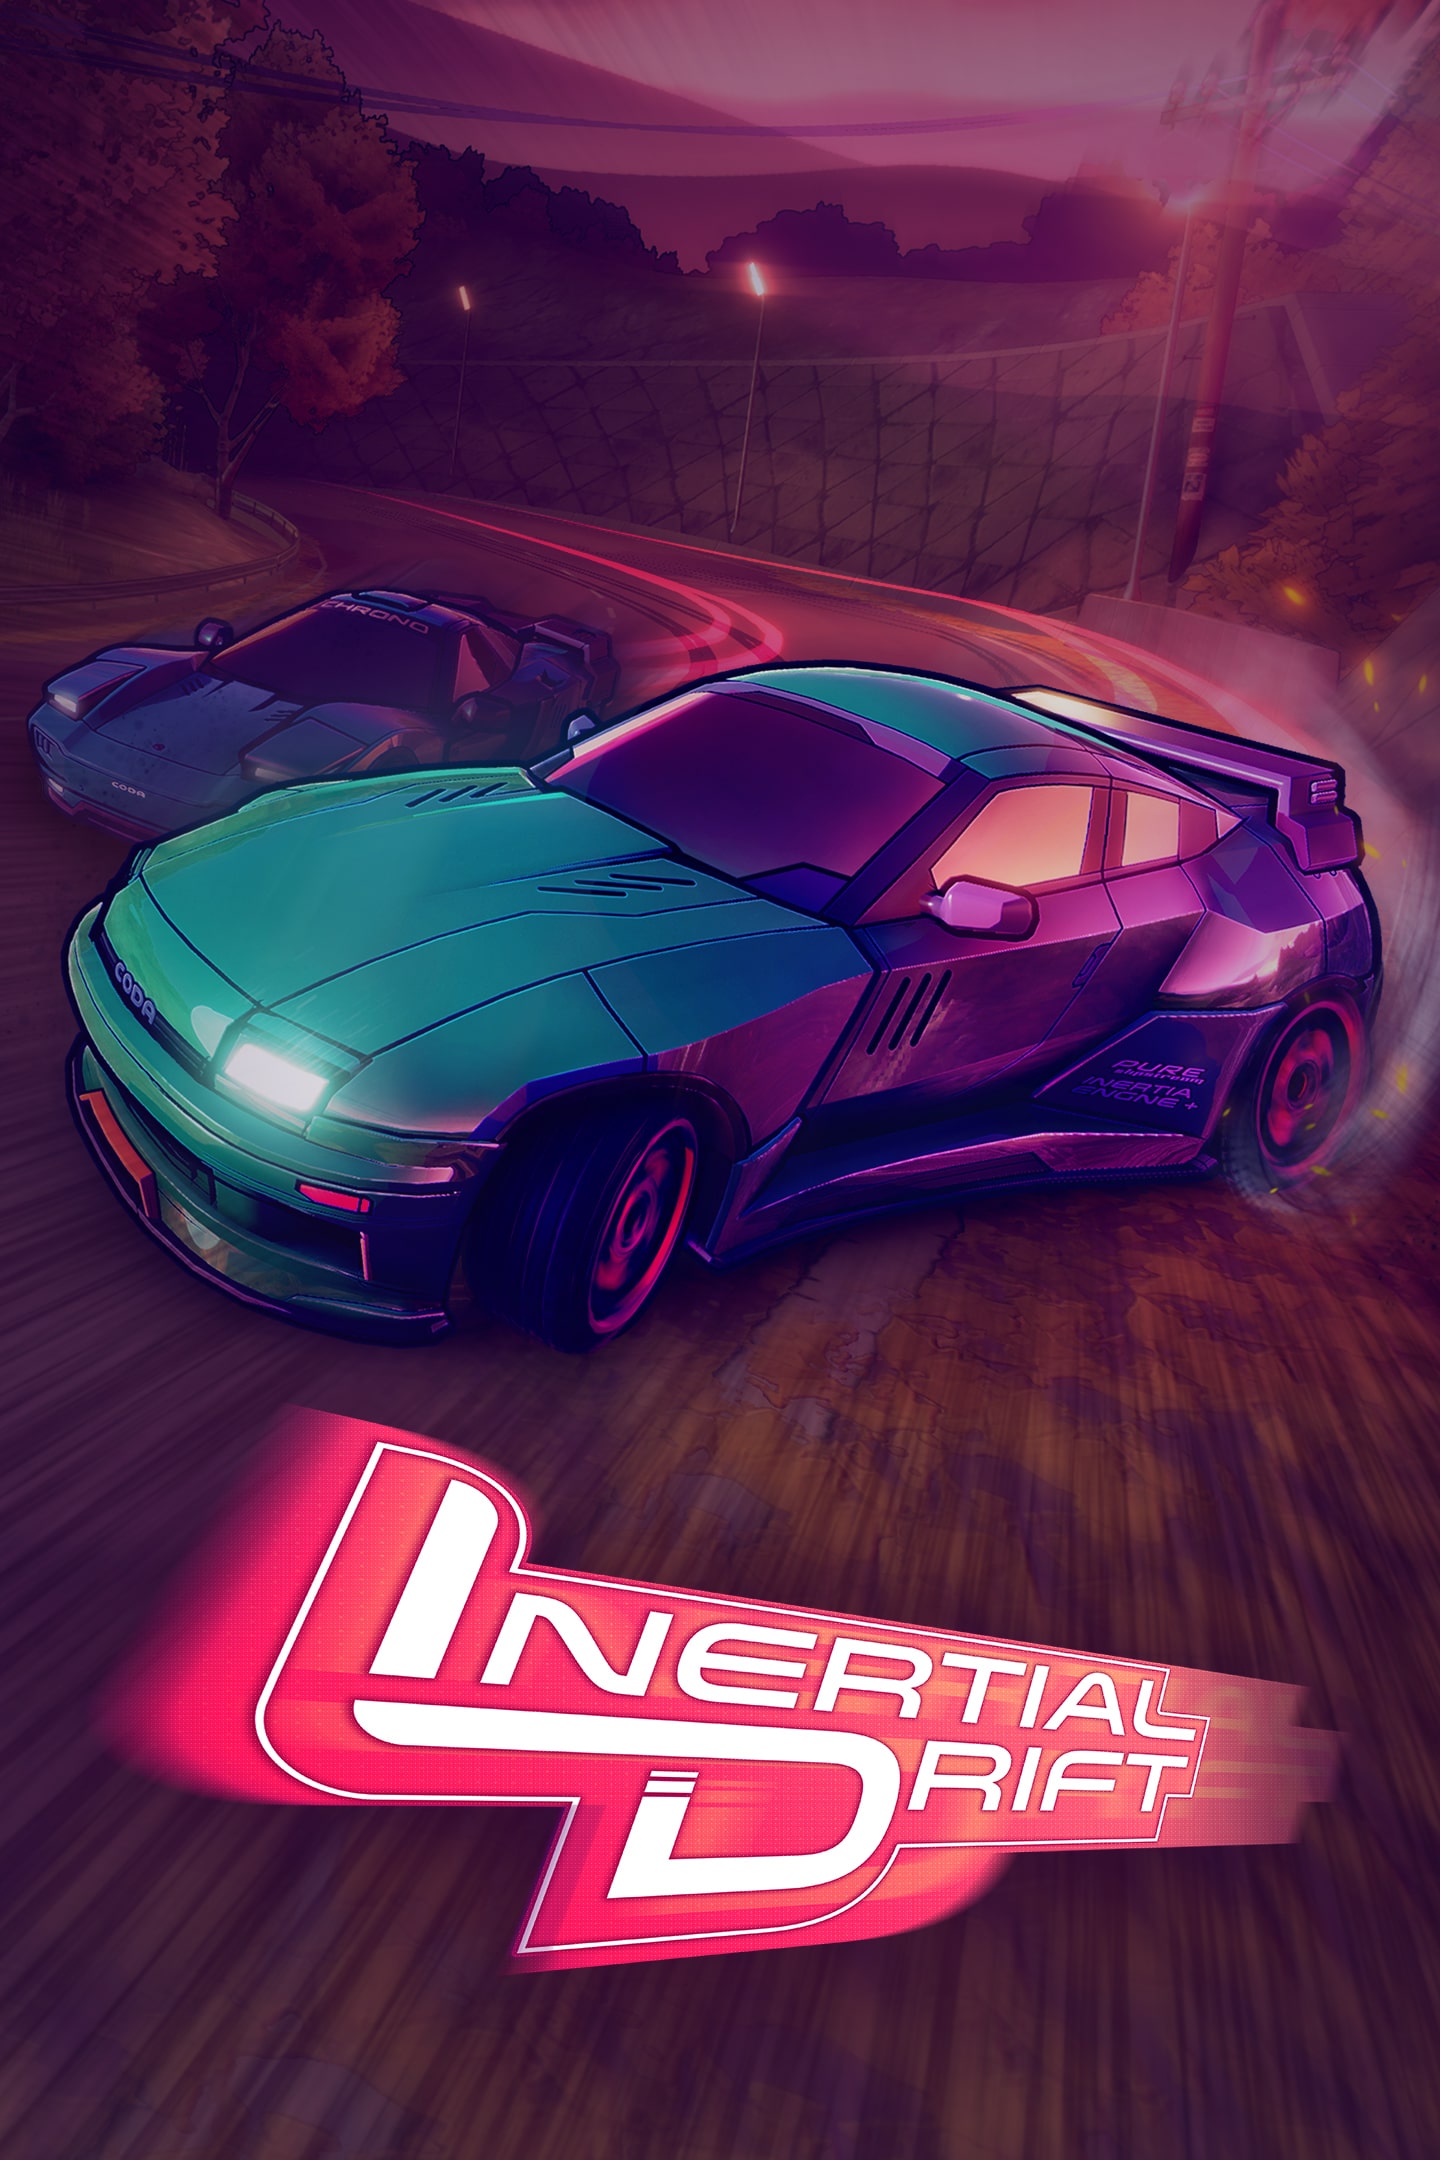 Buy Inertial Drift - Twilight Rivals Pack